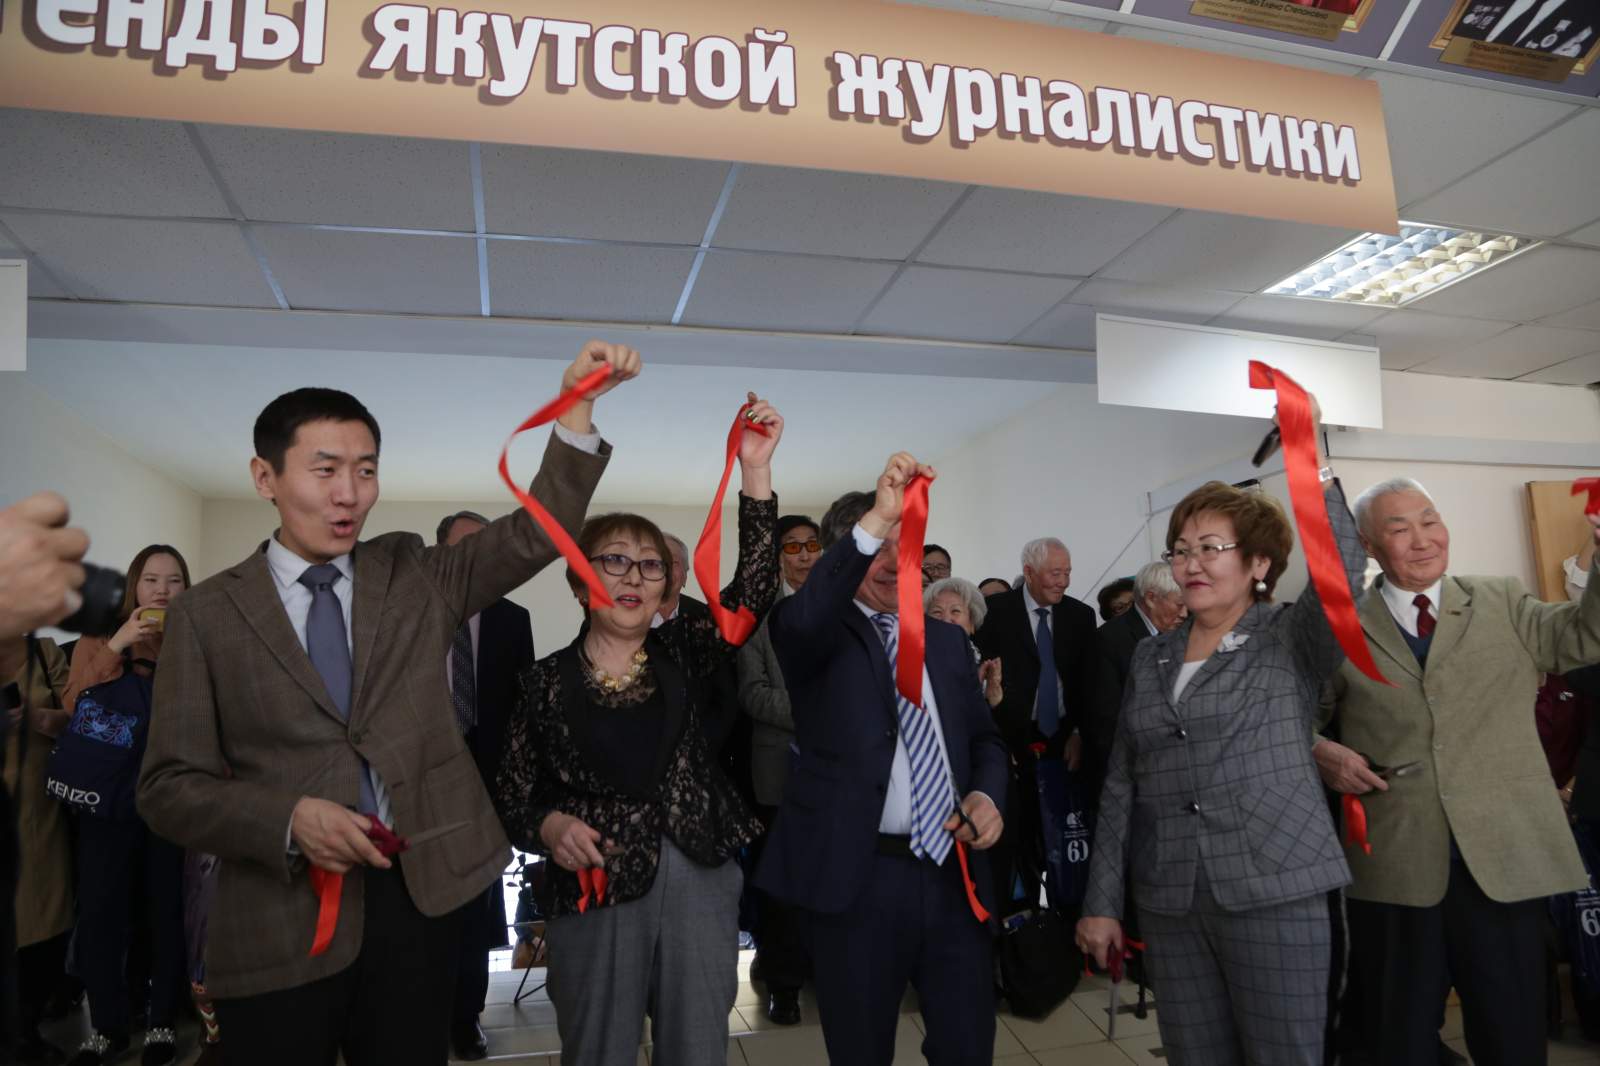 Открытие Музея якутской журналистики